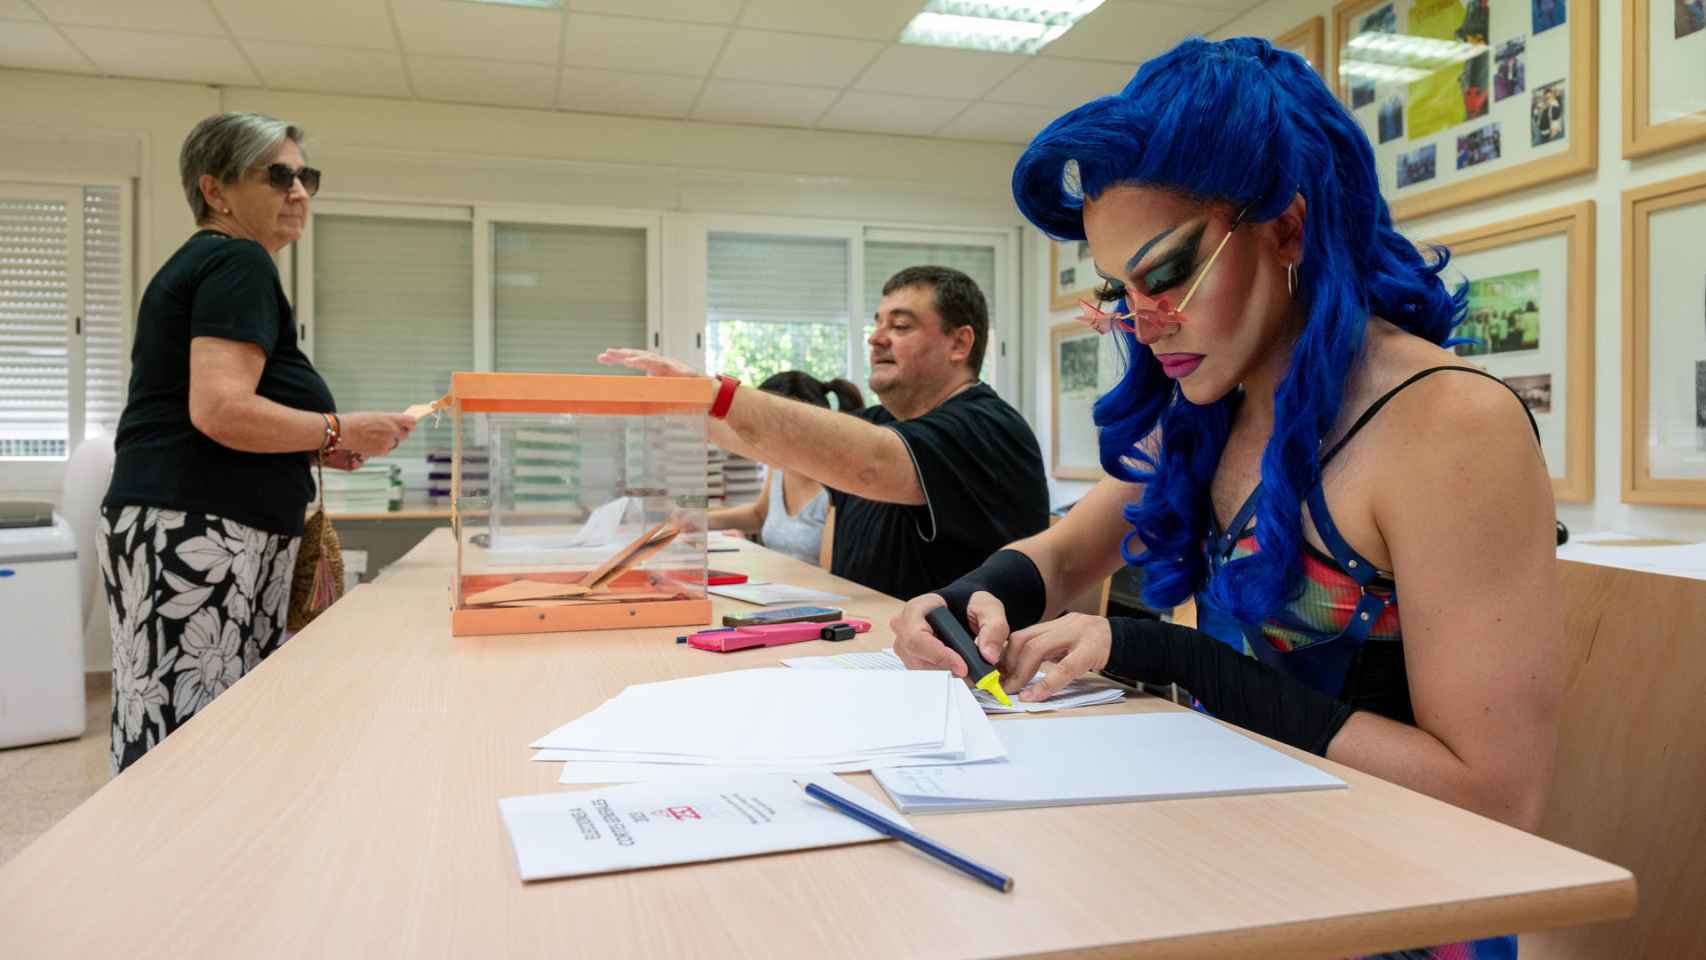 'Drag queen' en un colegio de Madrid.